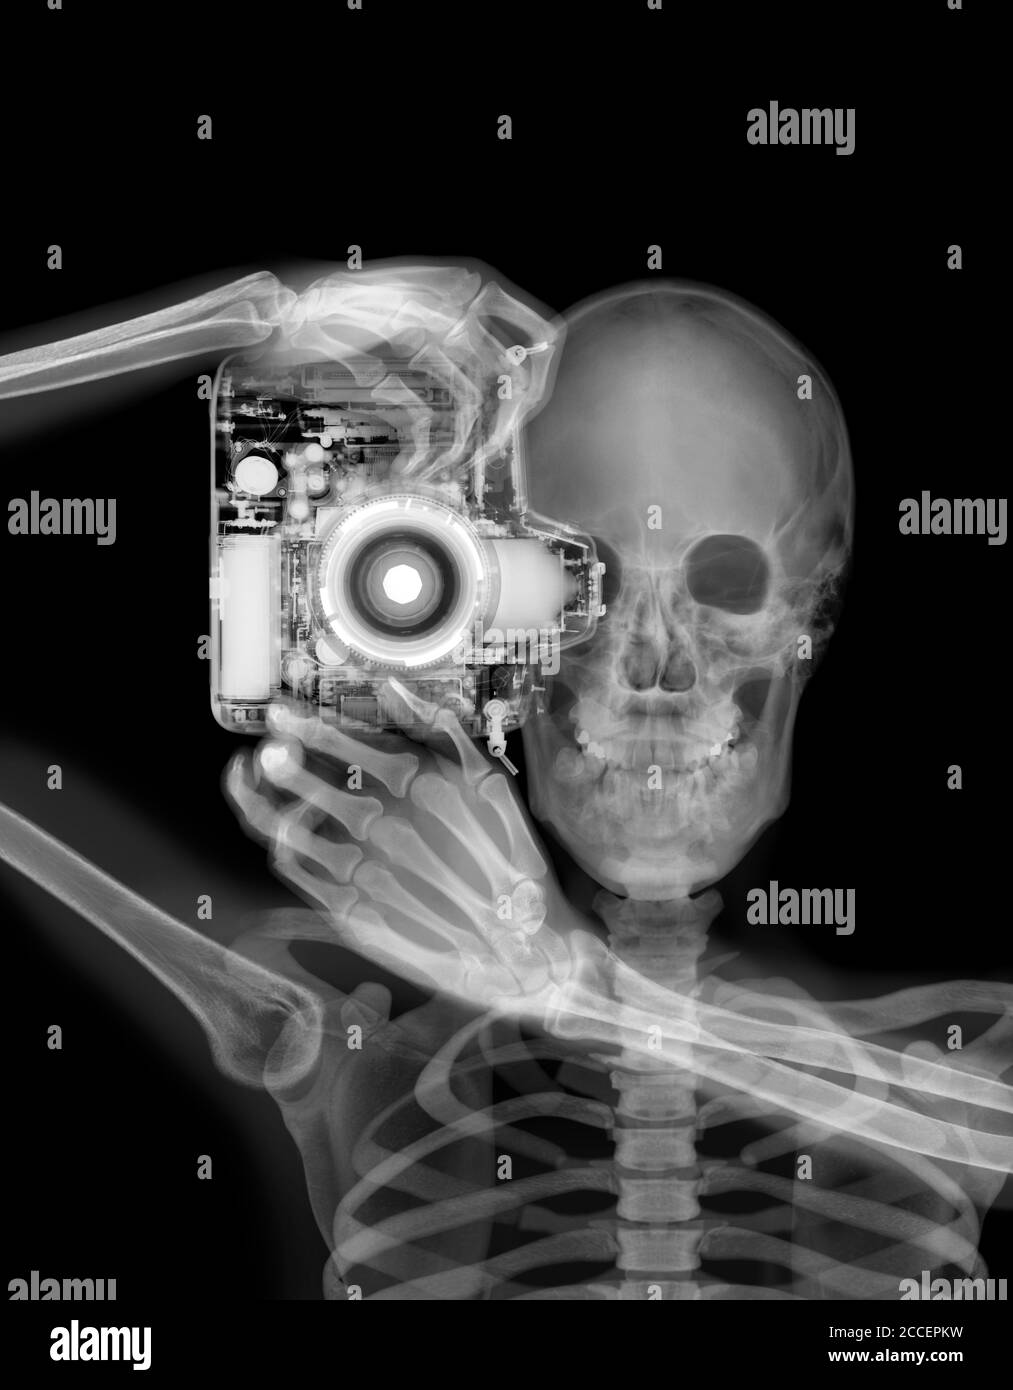 Skelett und Kamera, Röntgen Stockfotografie - Alamy